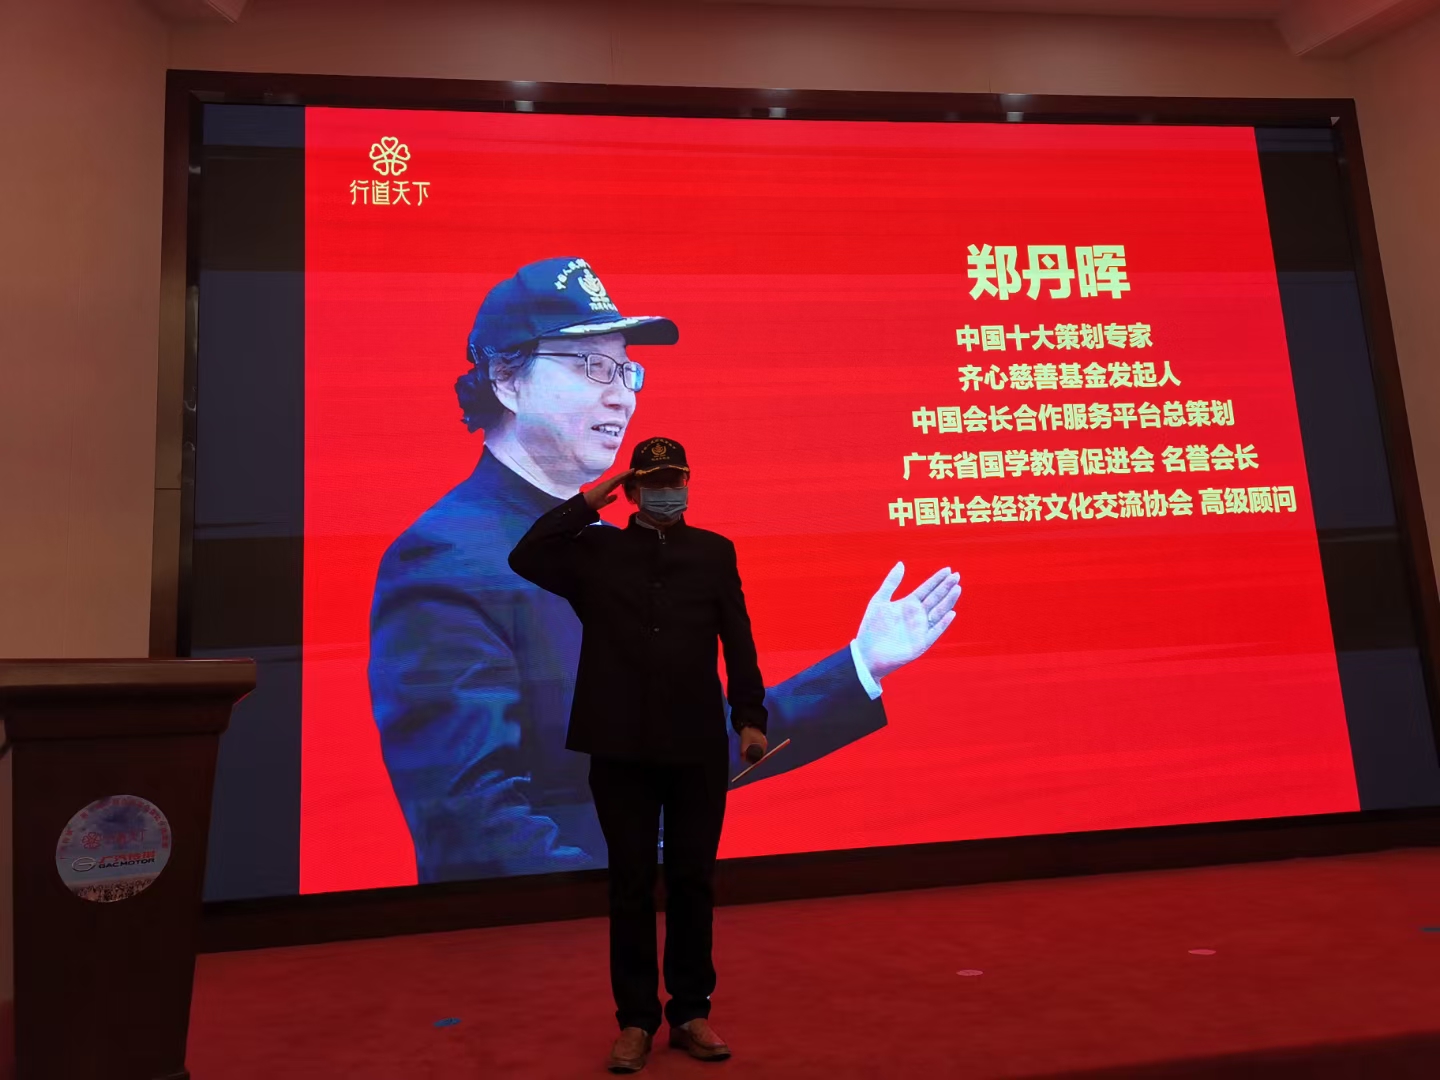 第二届广汽传祺杯中国企业家公益徒步挑战赛成功举行